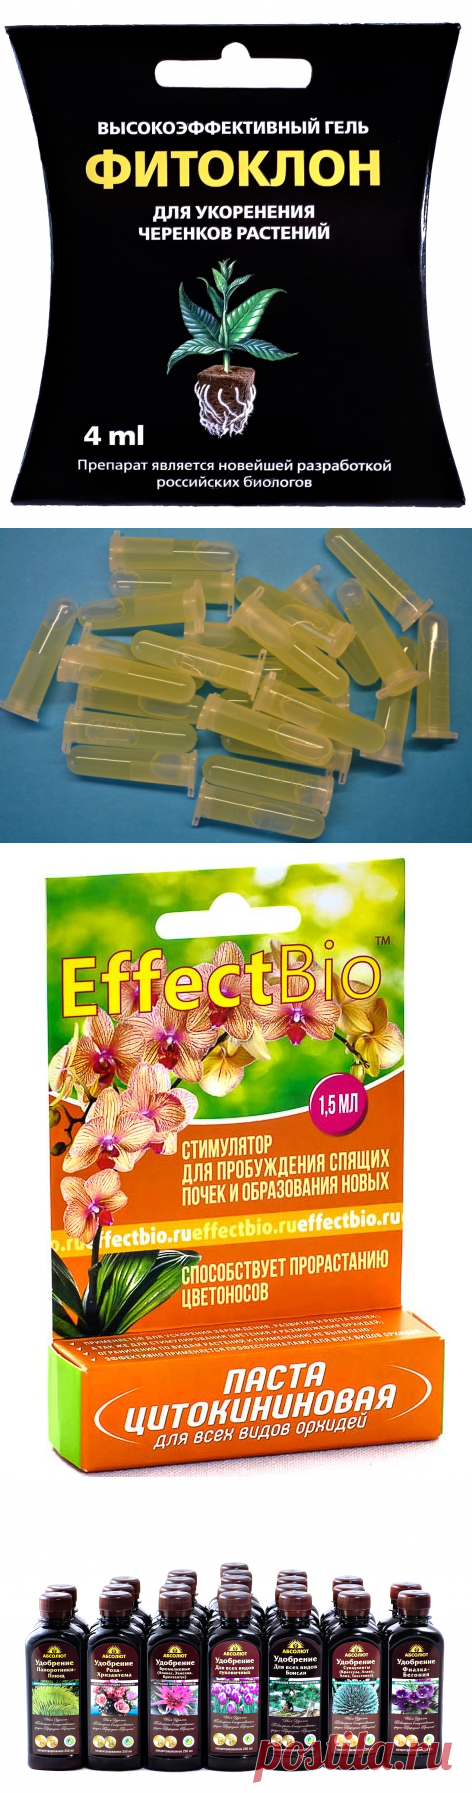 Каталог продукции нашего производства - Производитель «EffectBio» «Effect» «Effect+» «Абсолют»